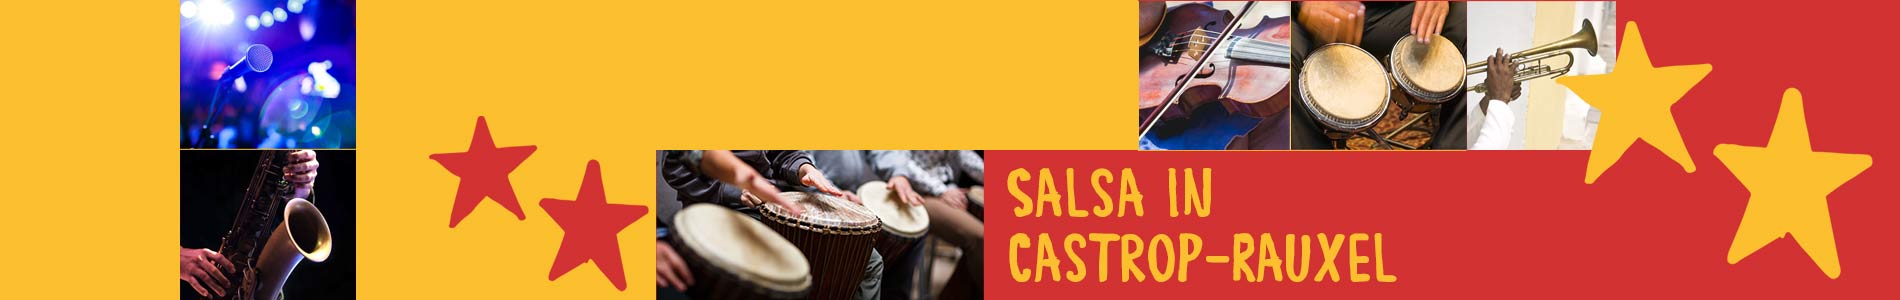 Salsa in Castrop-Rauxel – Salsa lernen und tanzen, Tanzkurse, Partys, Veranstaltungen